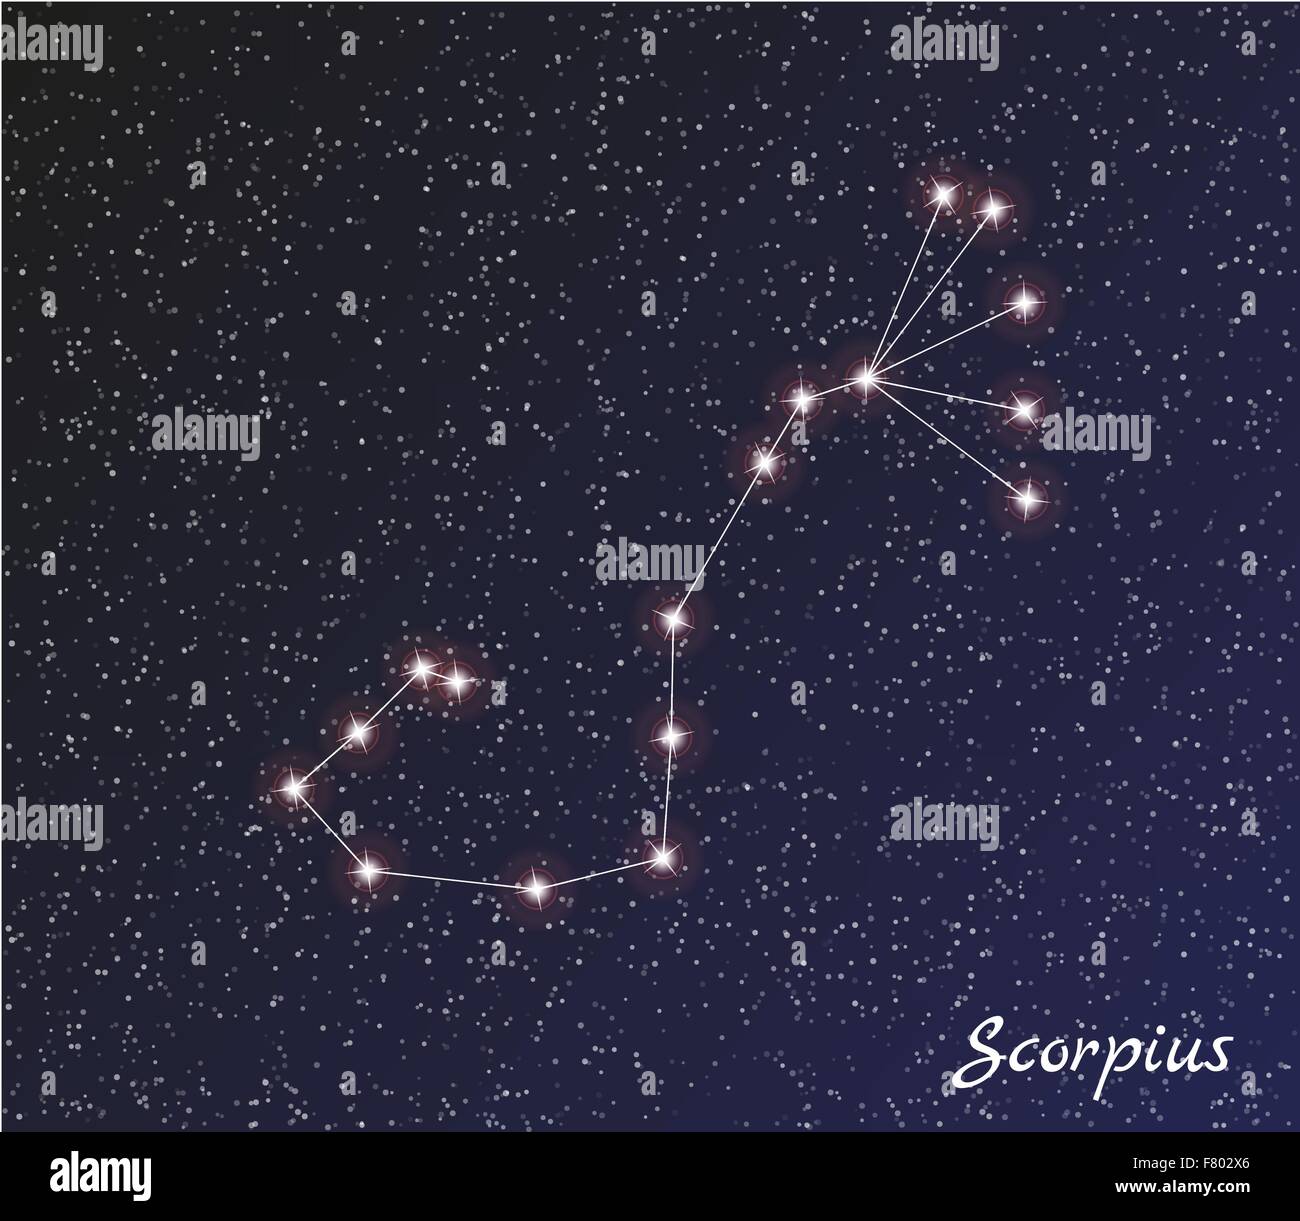 Scorpius Constellation Stock Photos & Scorpius Constellation Stock ...